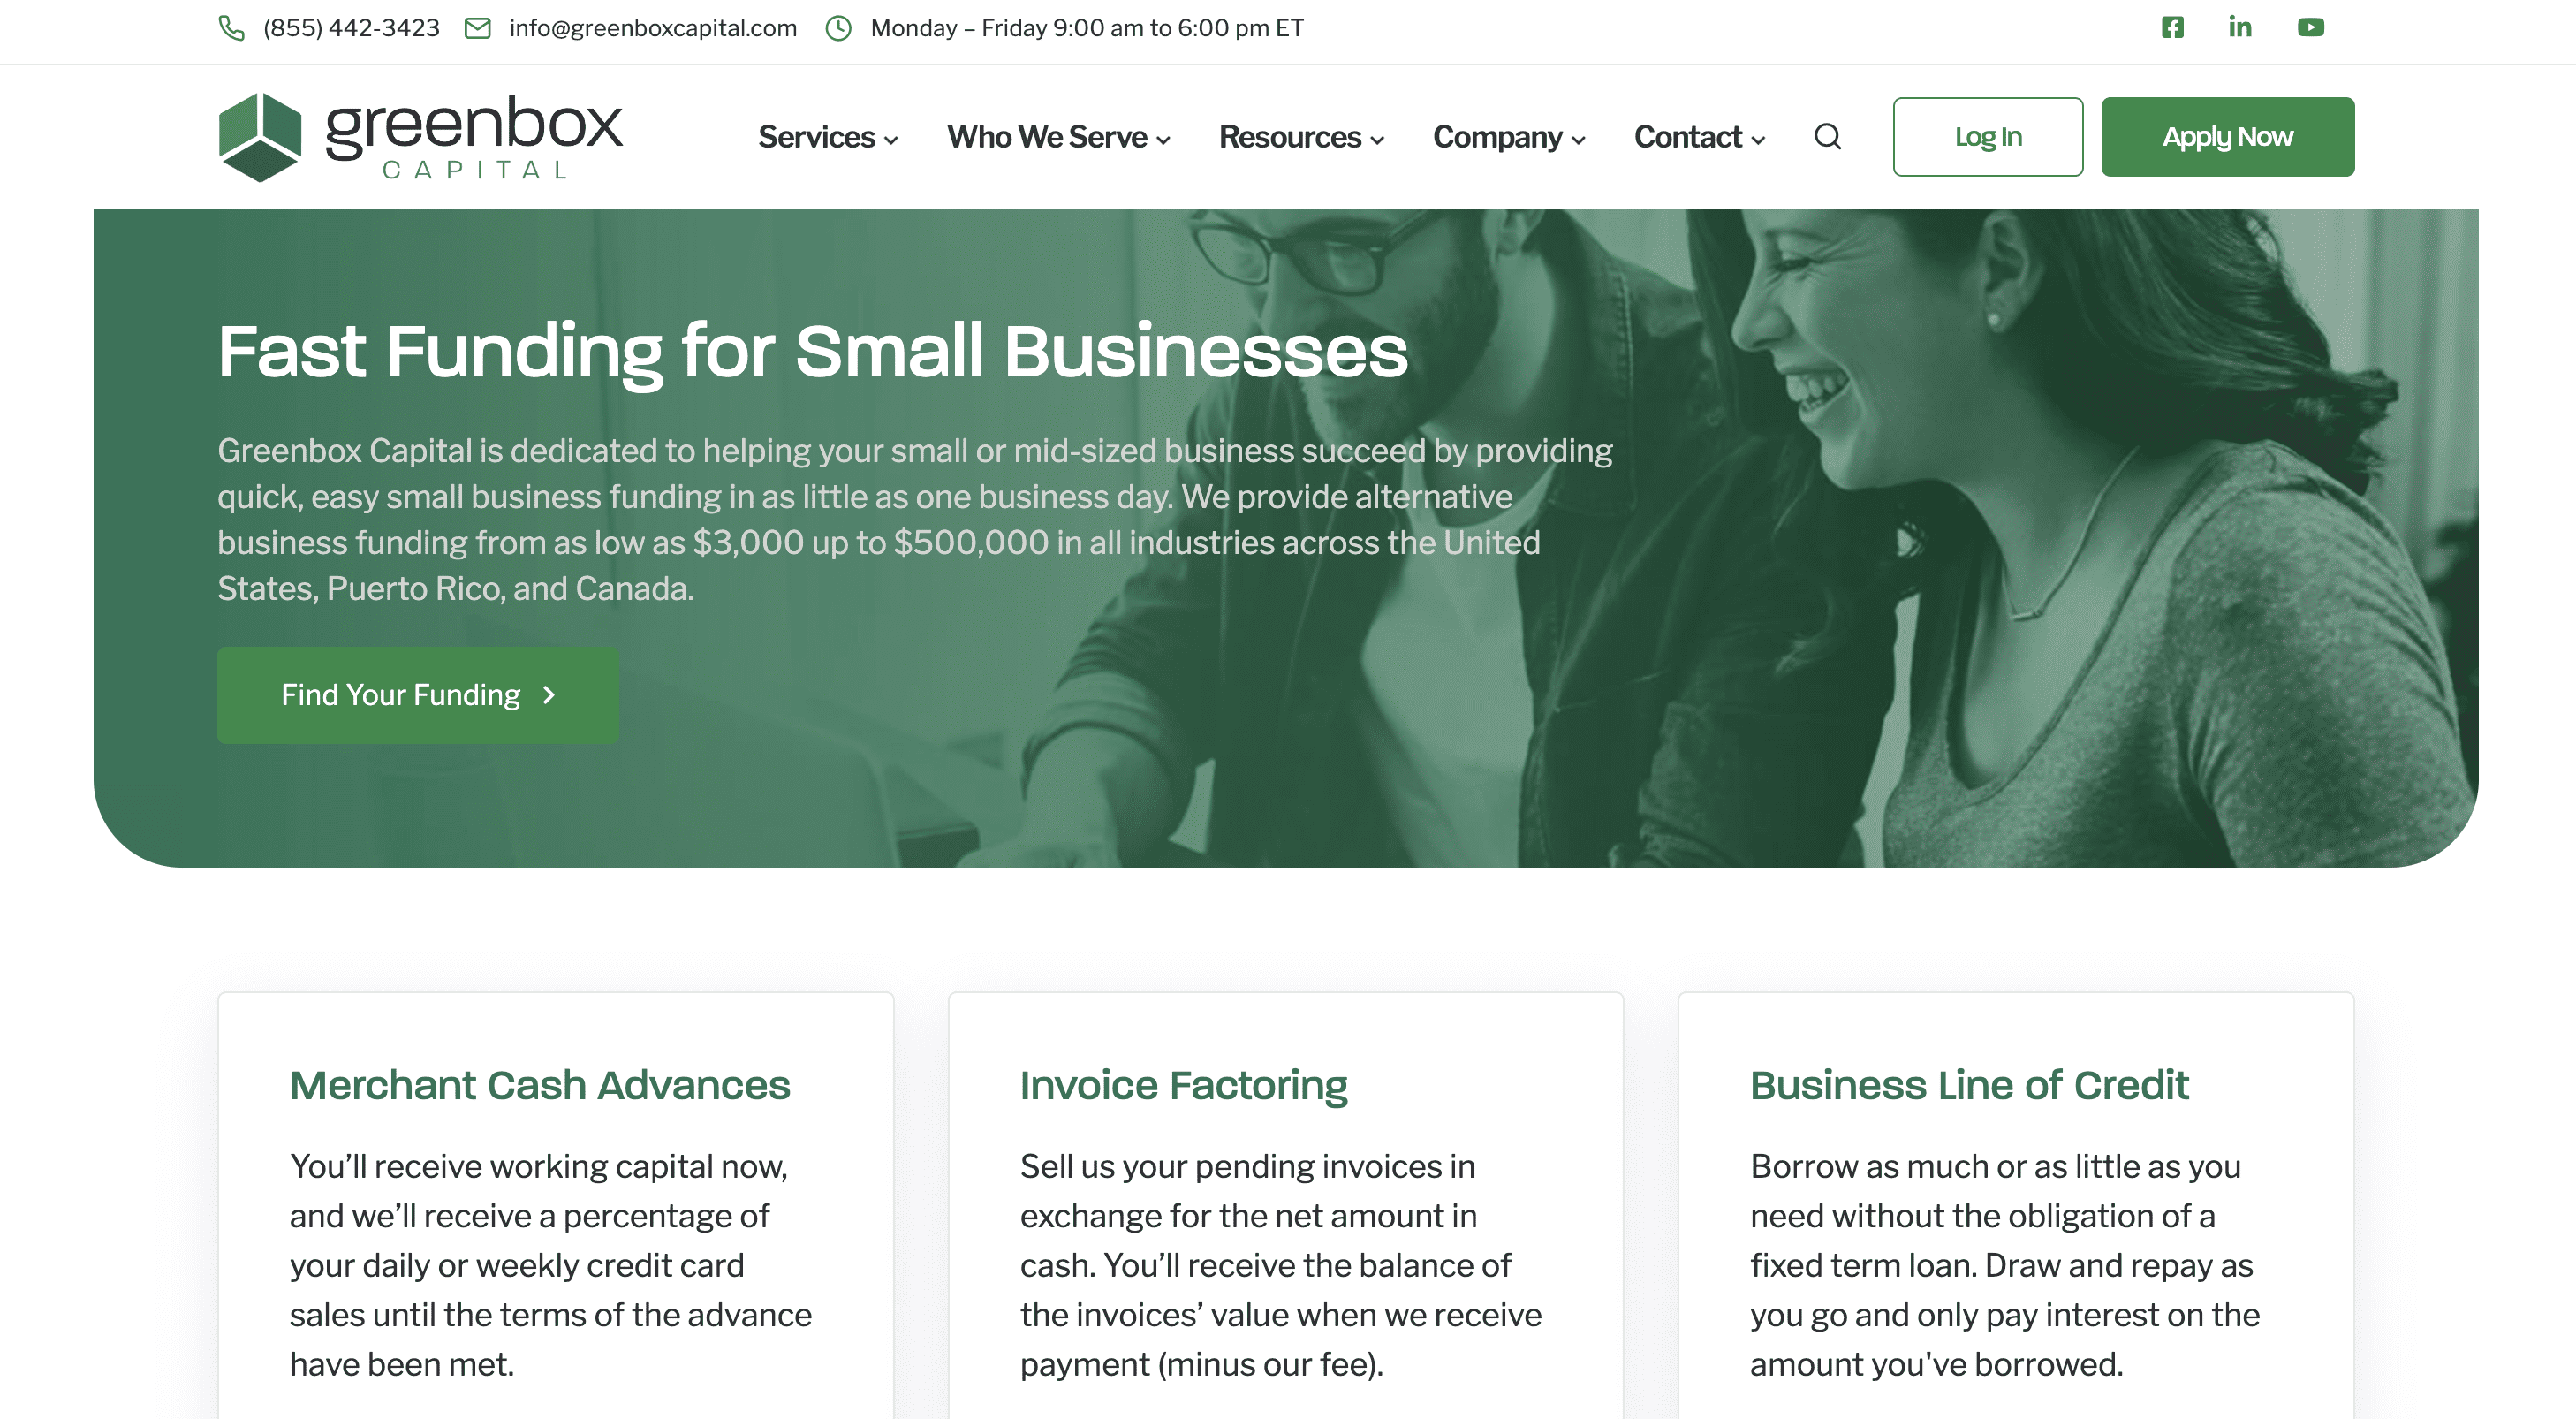 greenbox capital website homepage screenshot